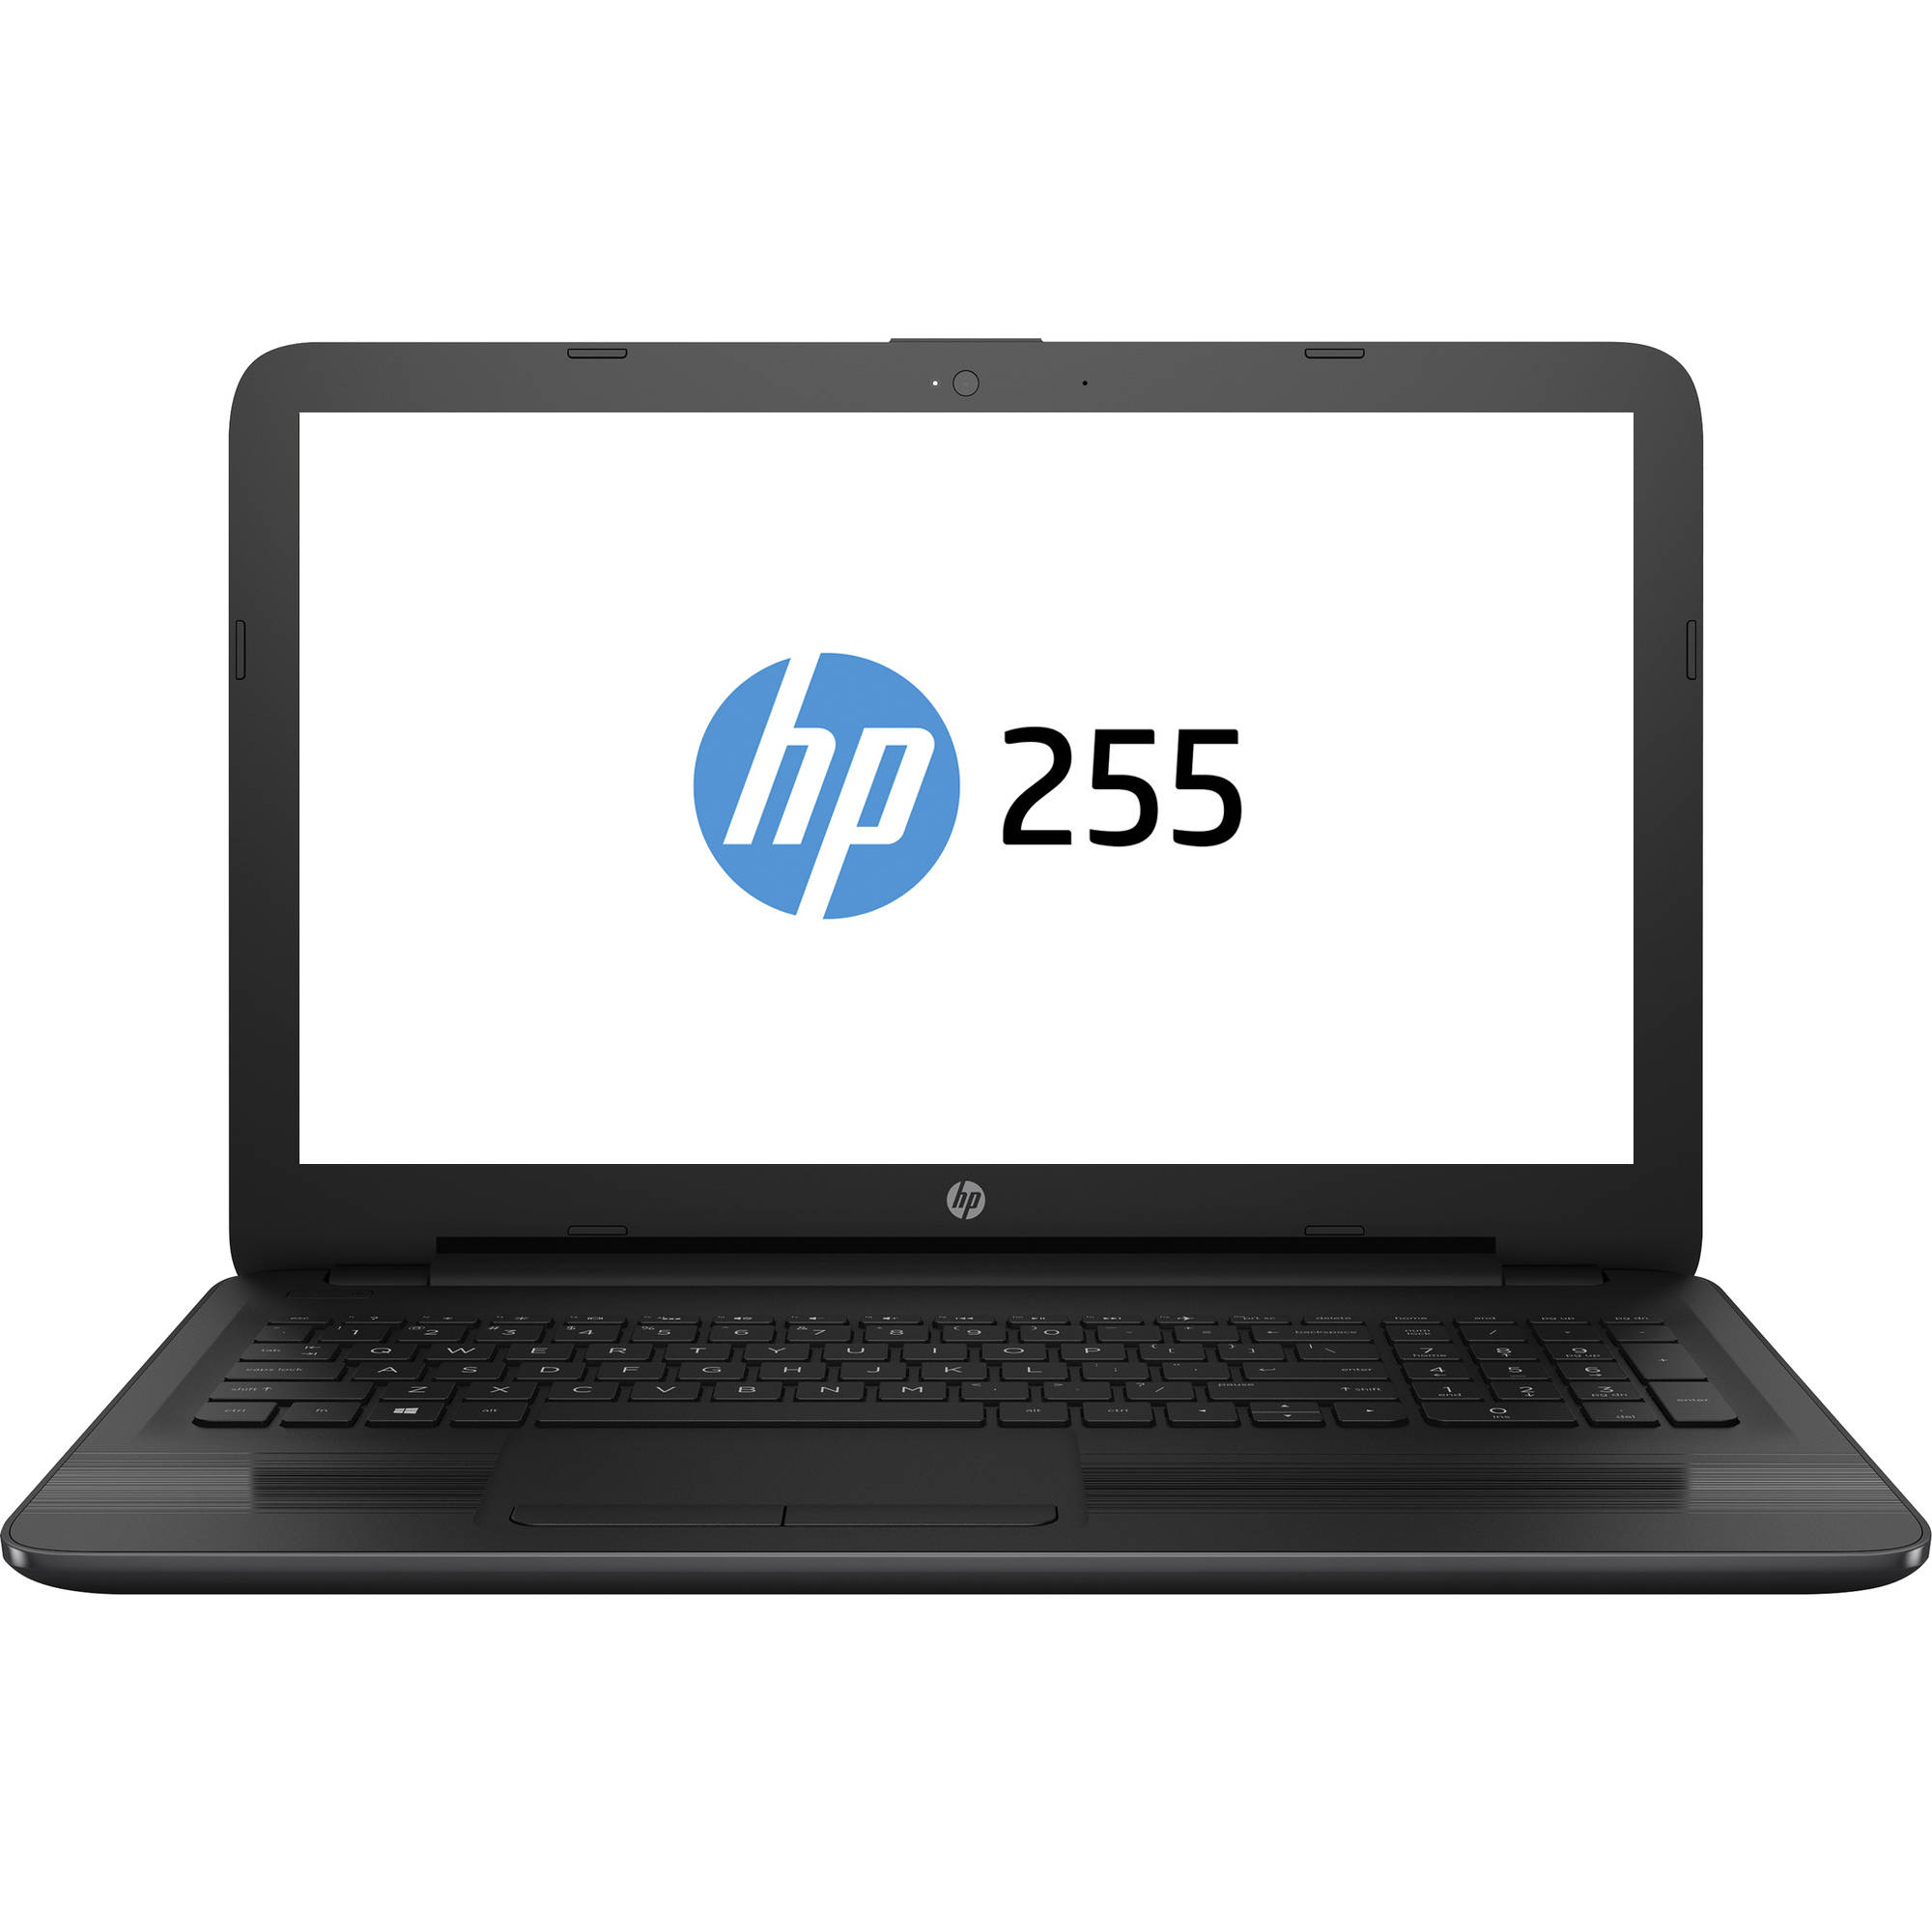 Laptop HP 255, AMD E2-7110, 4GB DDR3, HDD 500GB, AMD Radeon R2, Free DOS